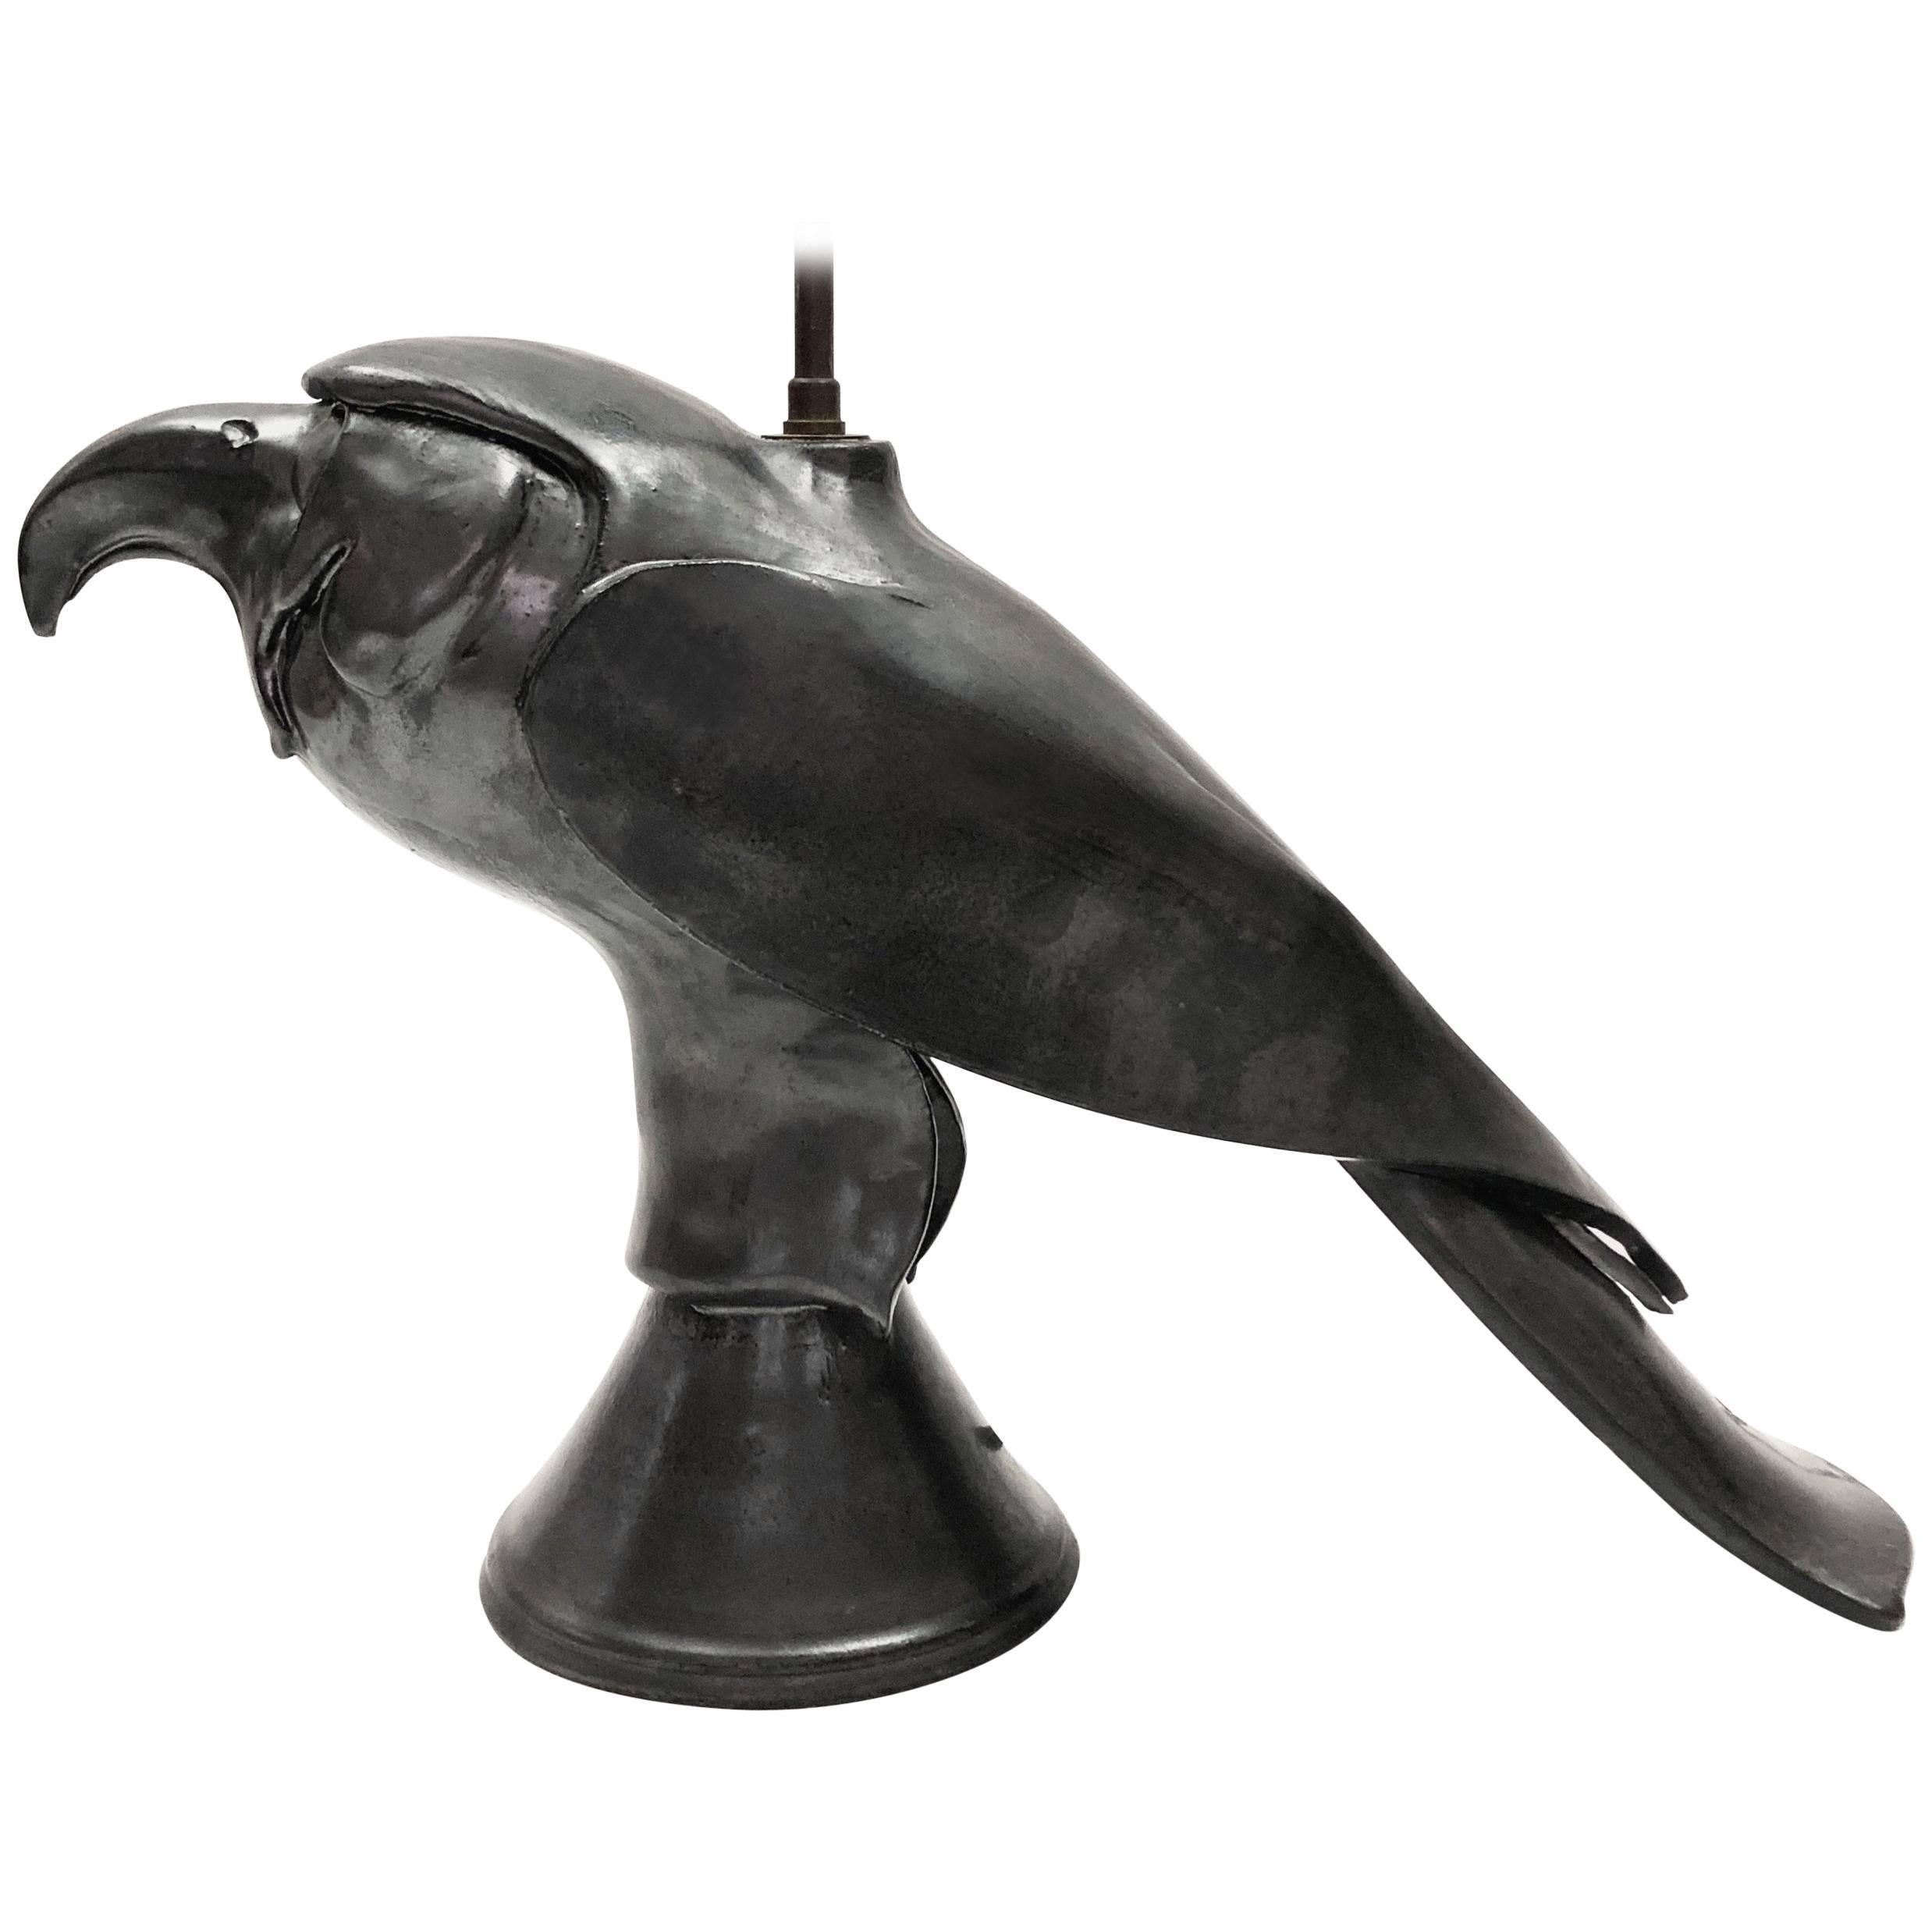 Ceramic Lamp Base, Bird Shaped, Glazed in Black For Sale